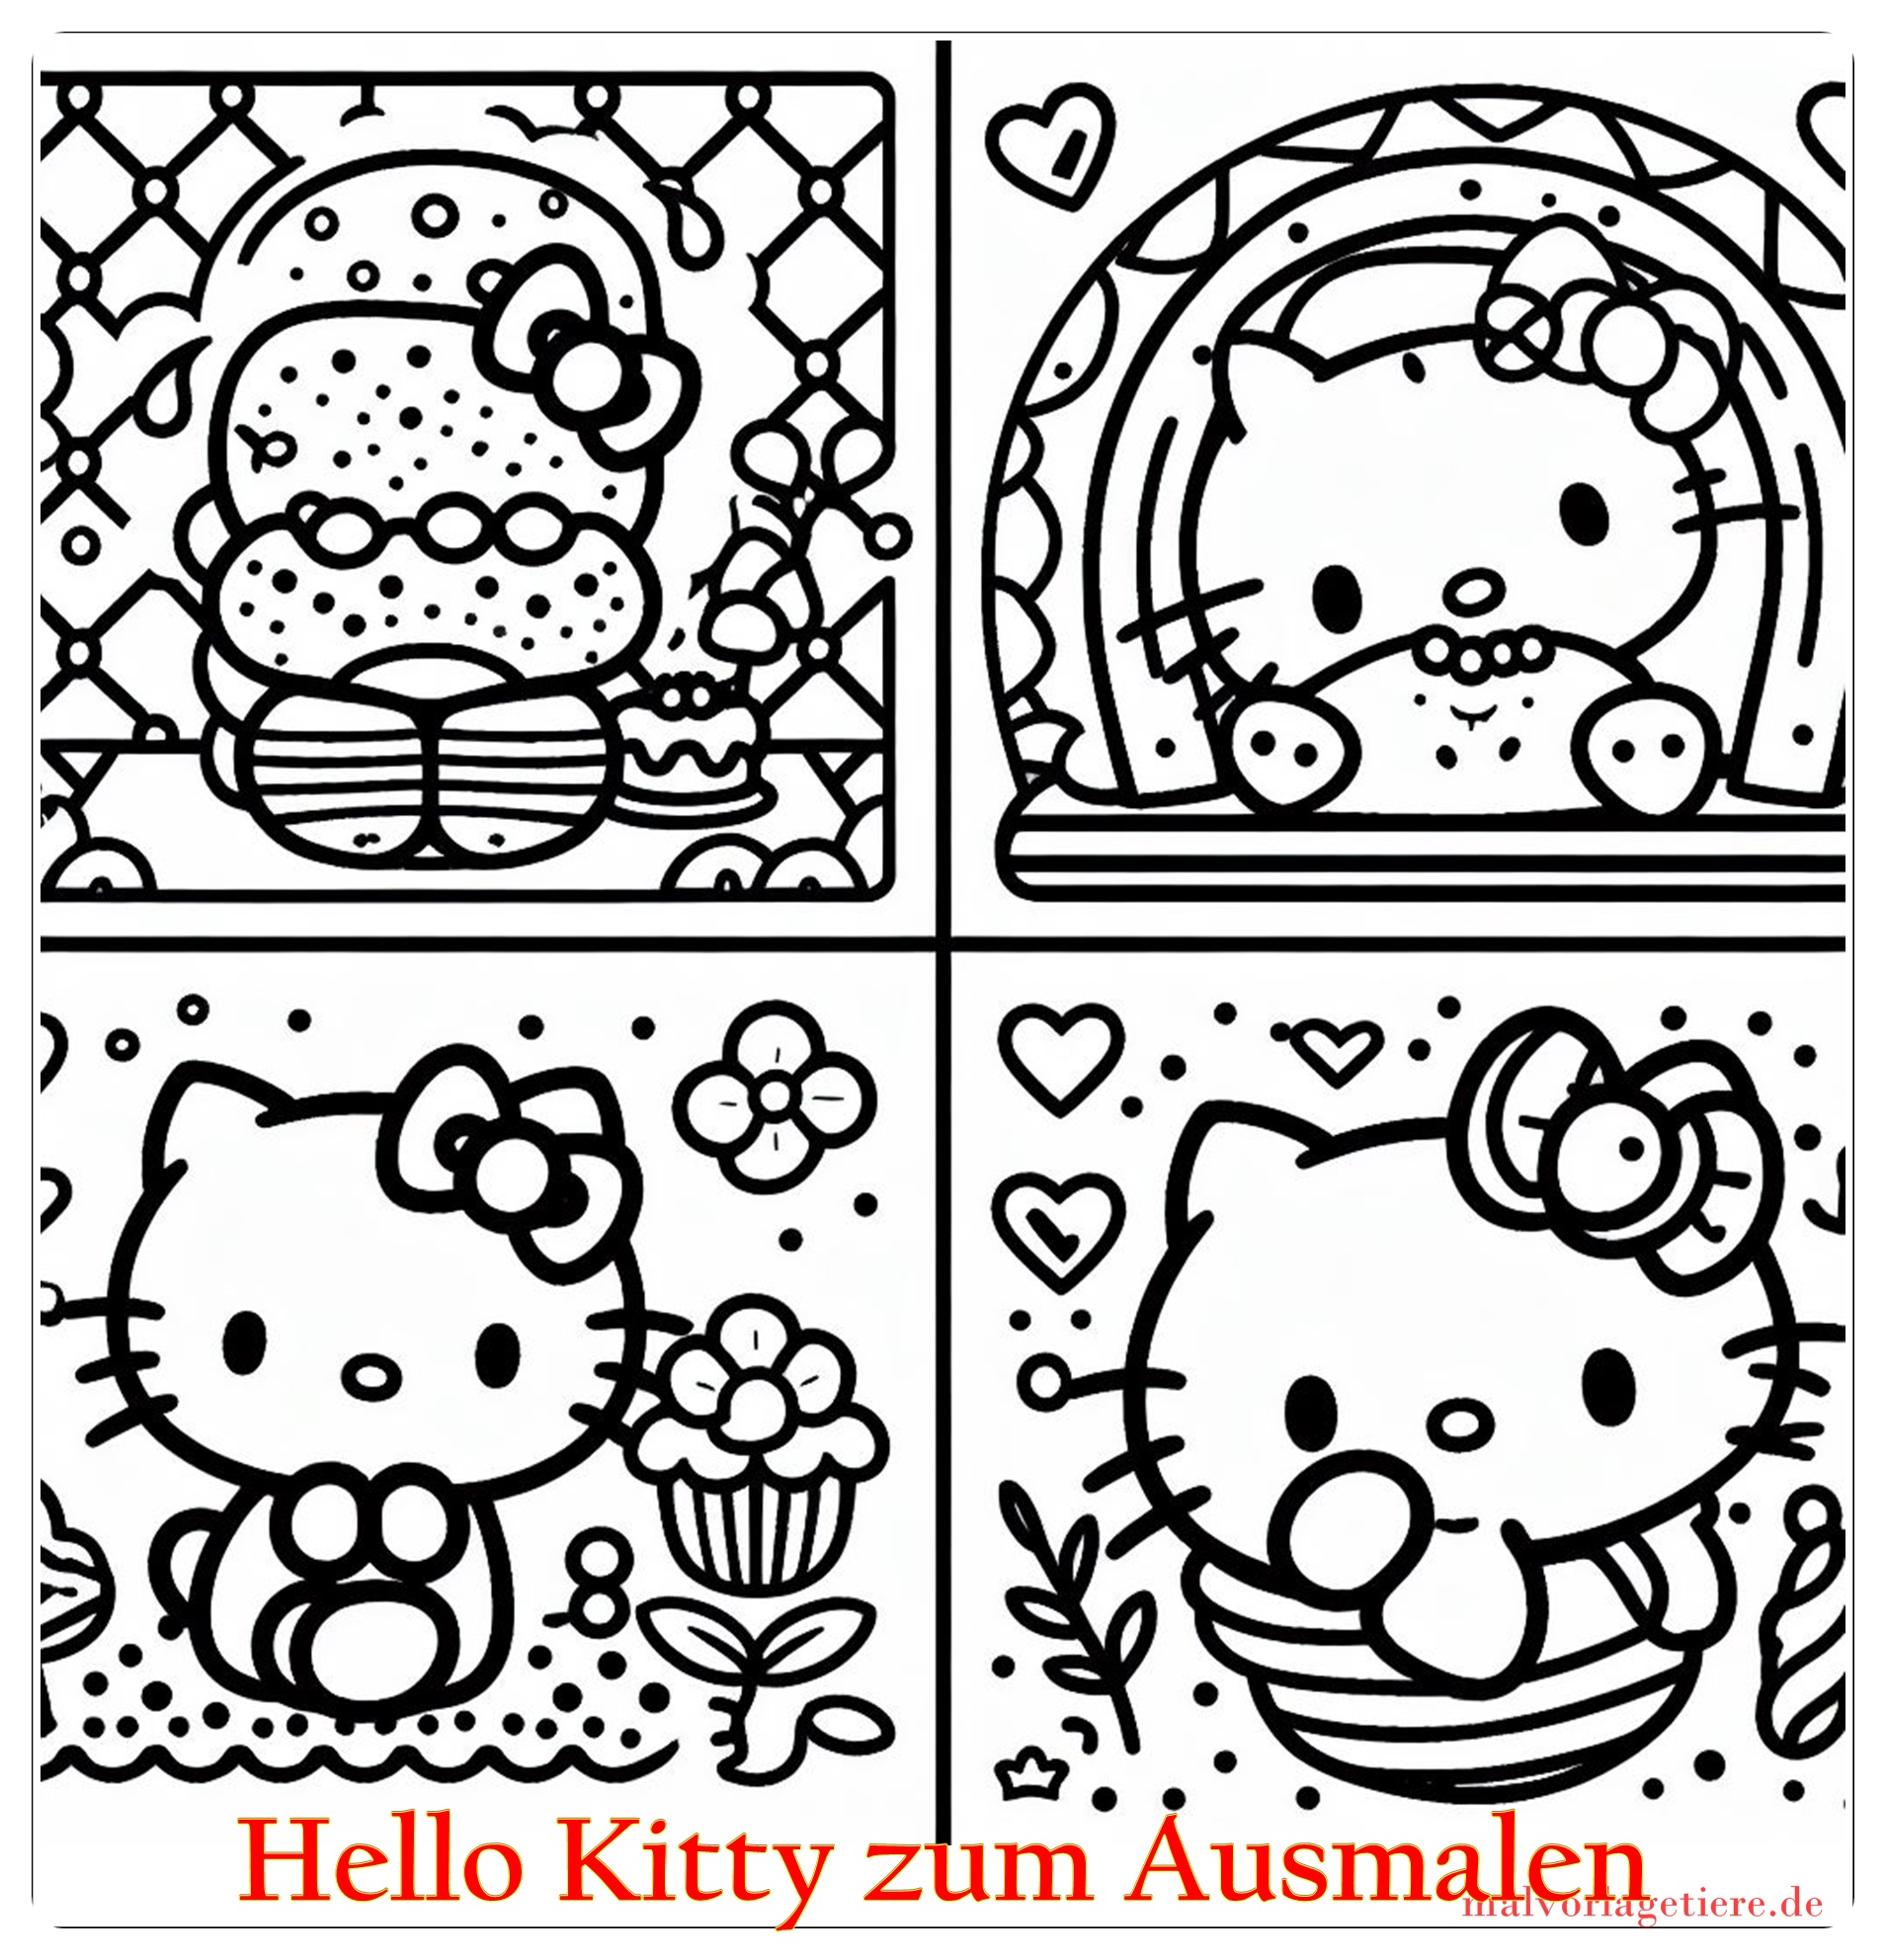 Hello Kitty zum Ausmalen 03 by malvorlagetiere